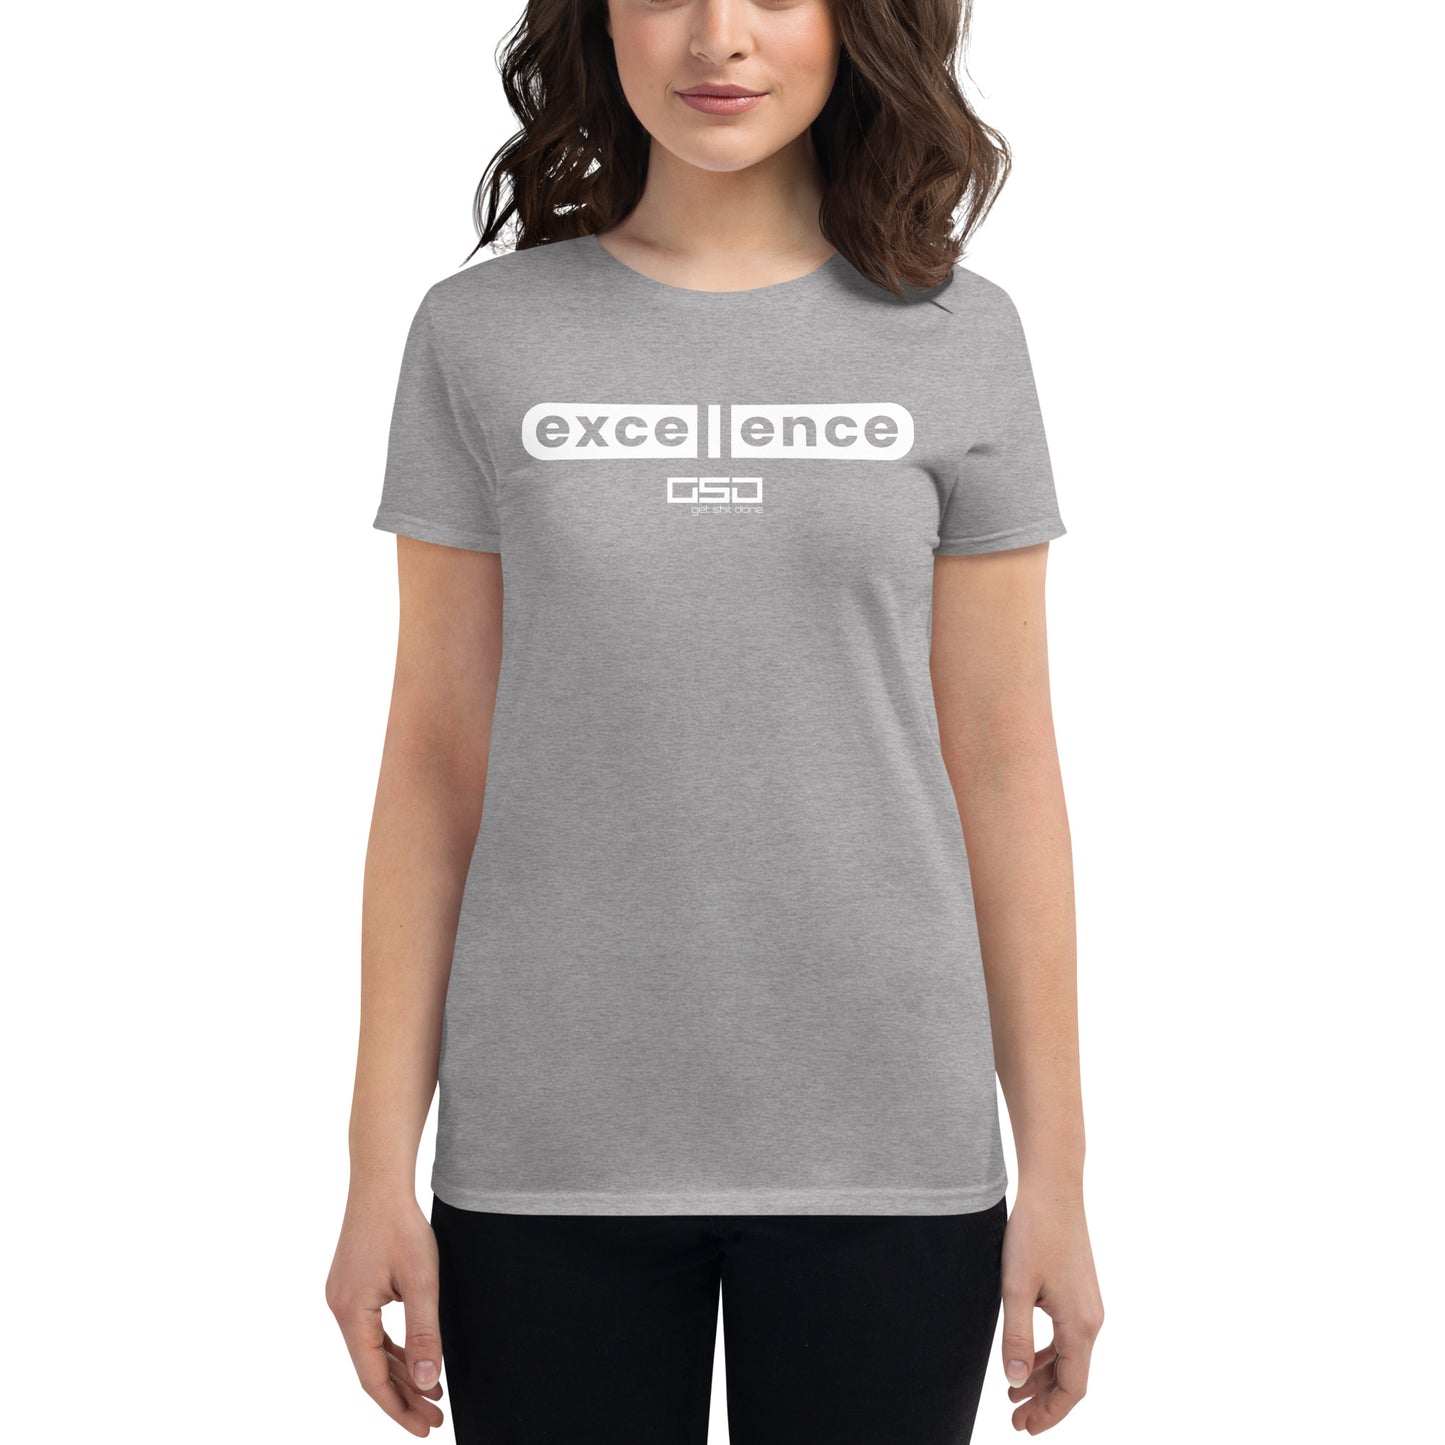 Excellence-Women's short sleeve t-shirt